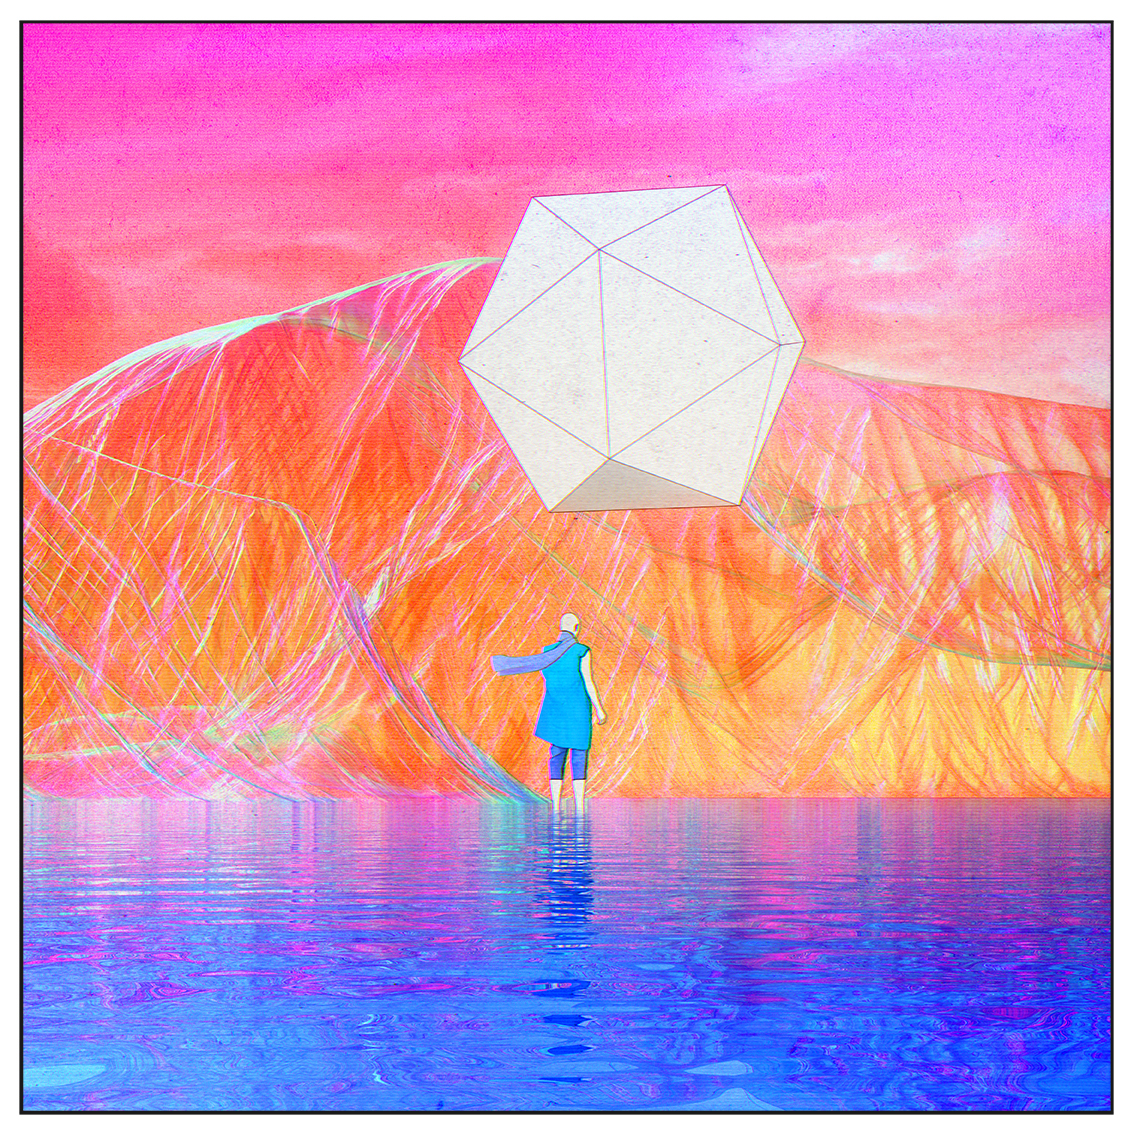 personal project album cover square ratio 1:1 Colourful  surreal surrealistic